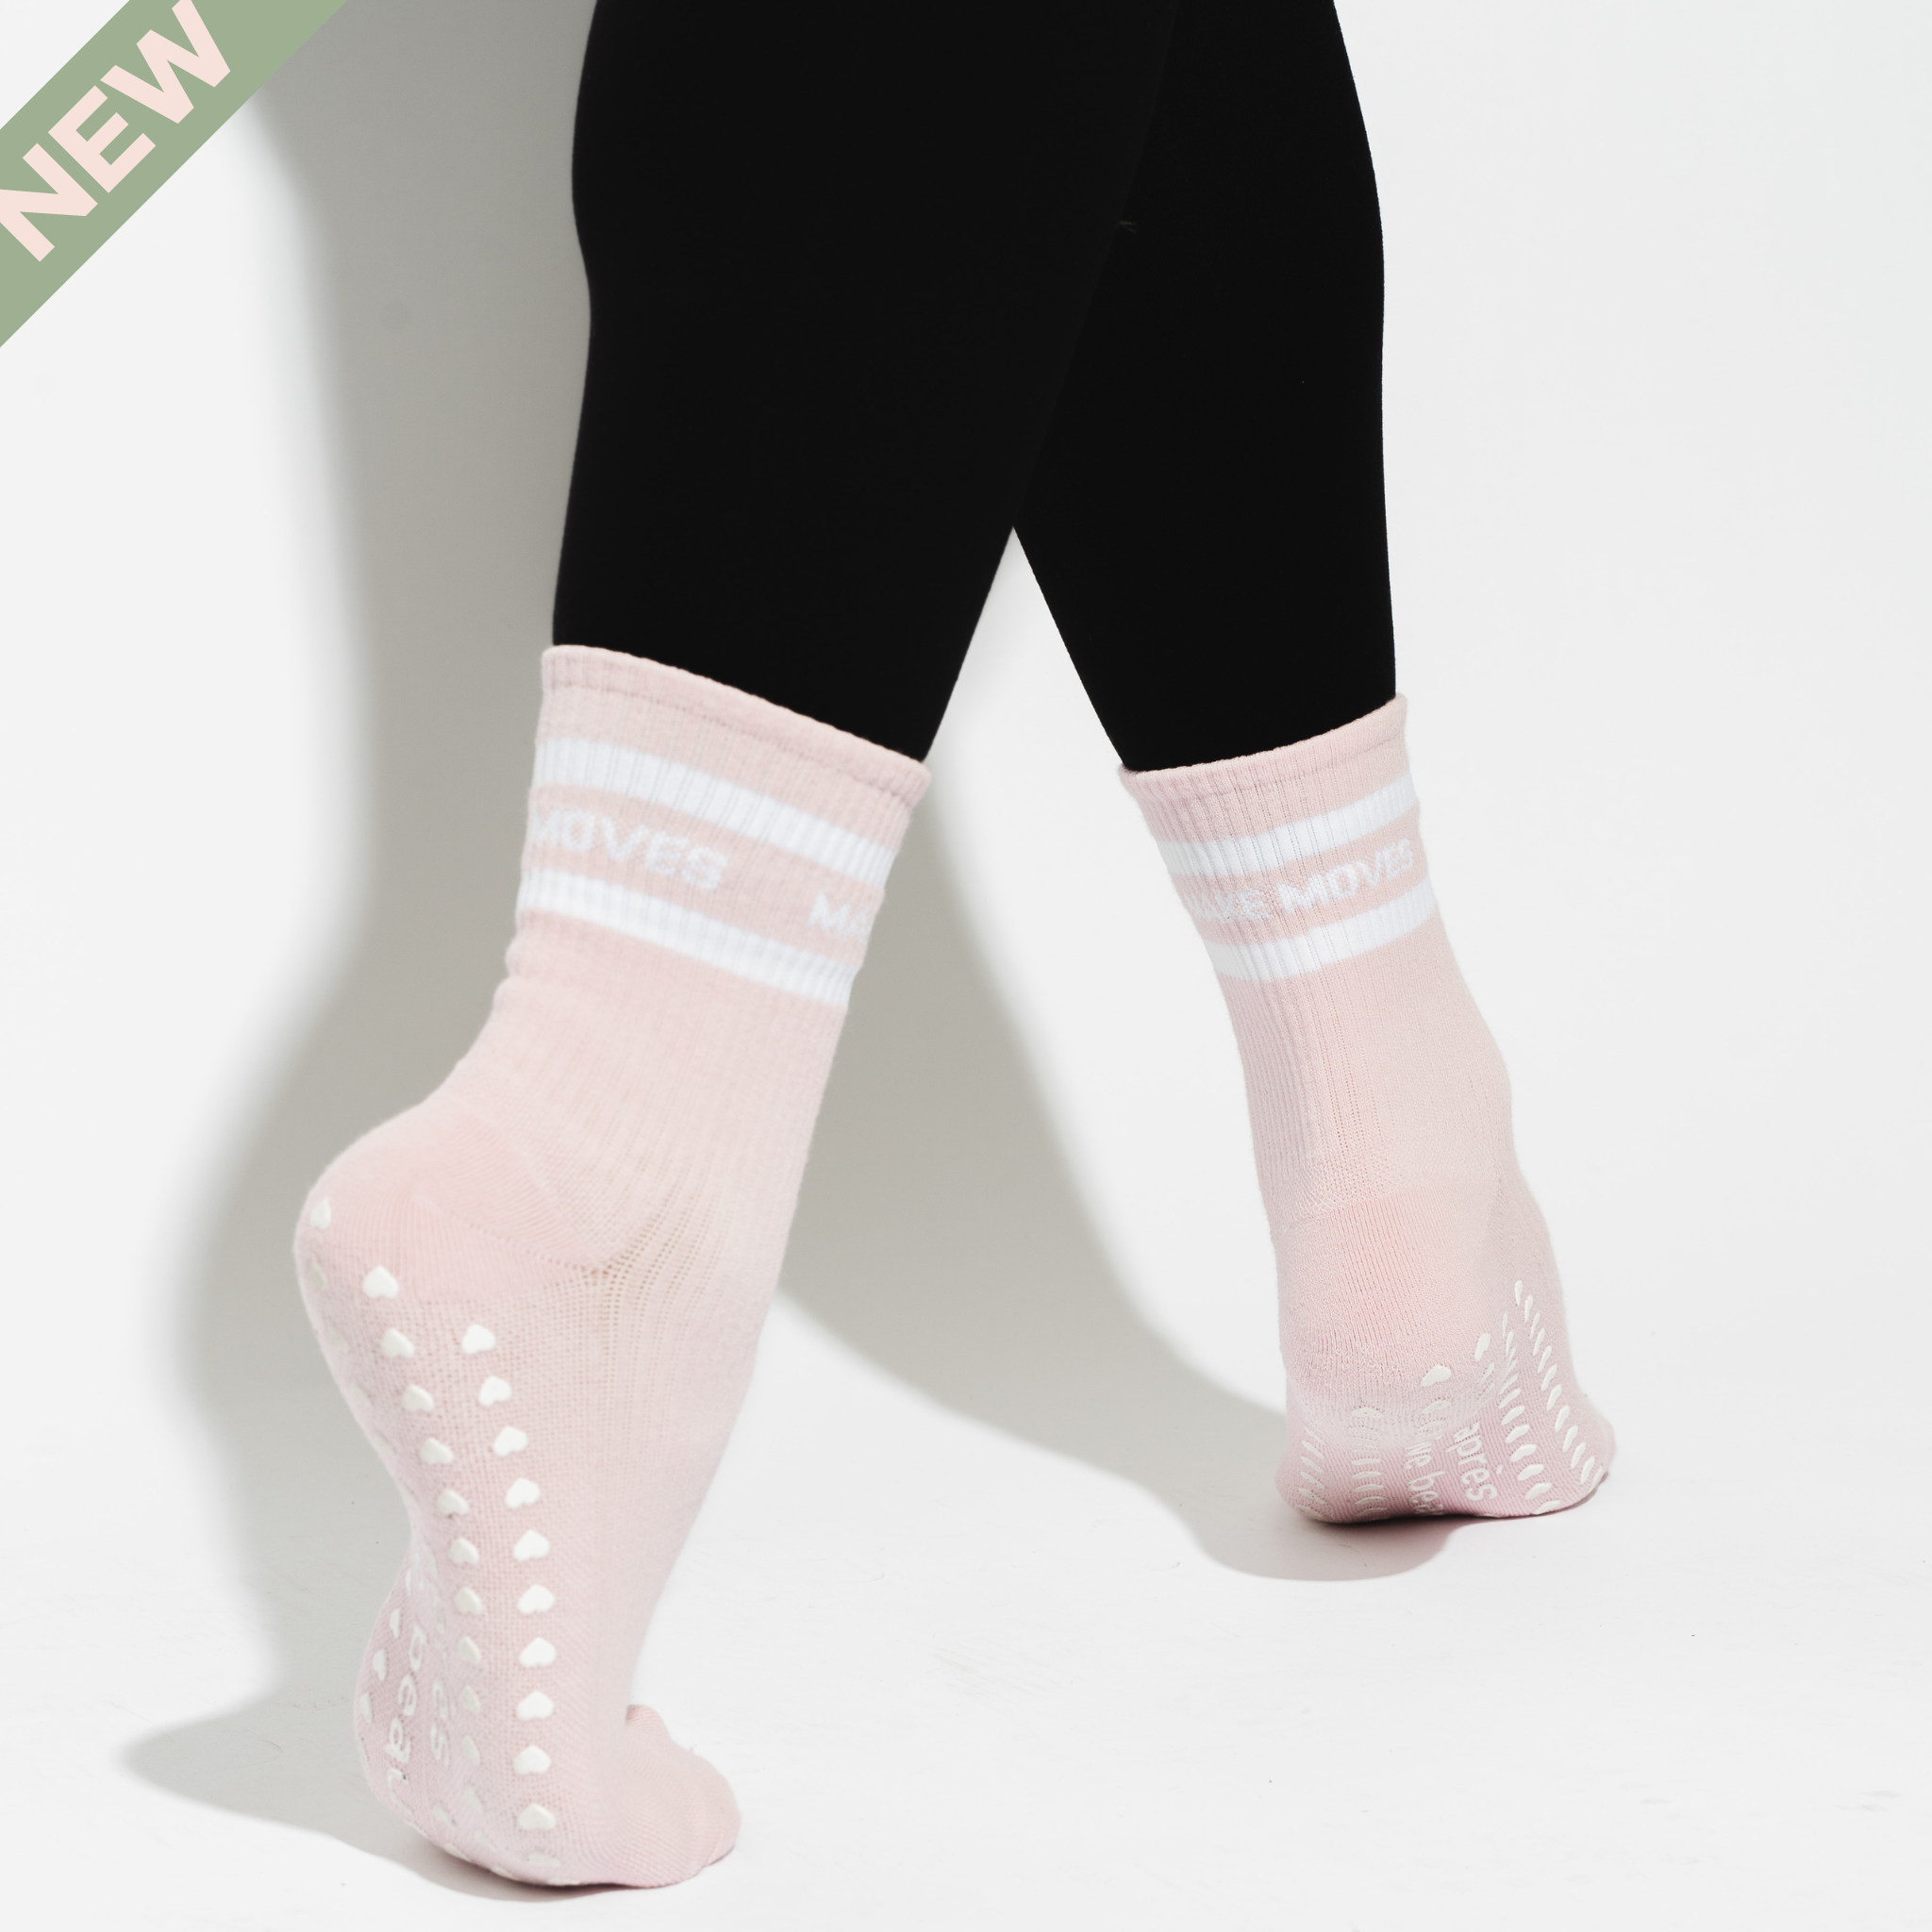 Reform Pilates - Bless her little pink Pilates socks 💓an